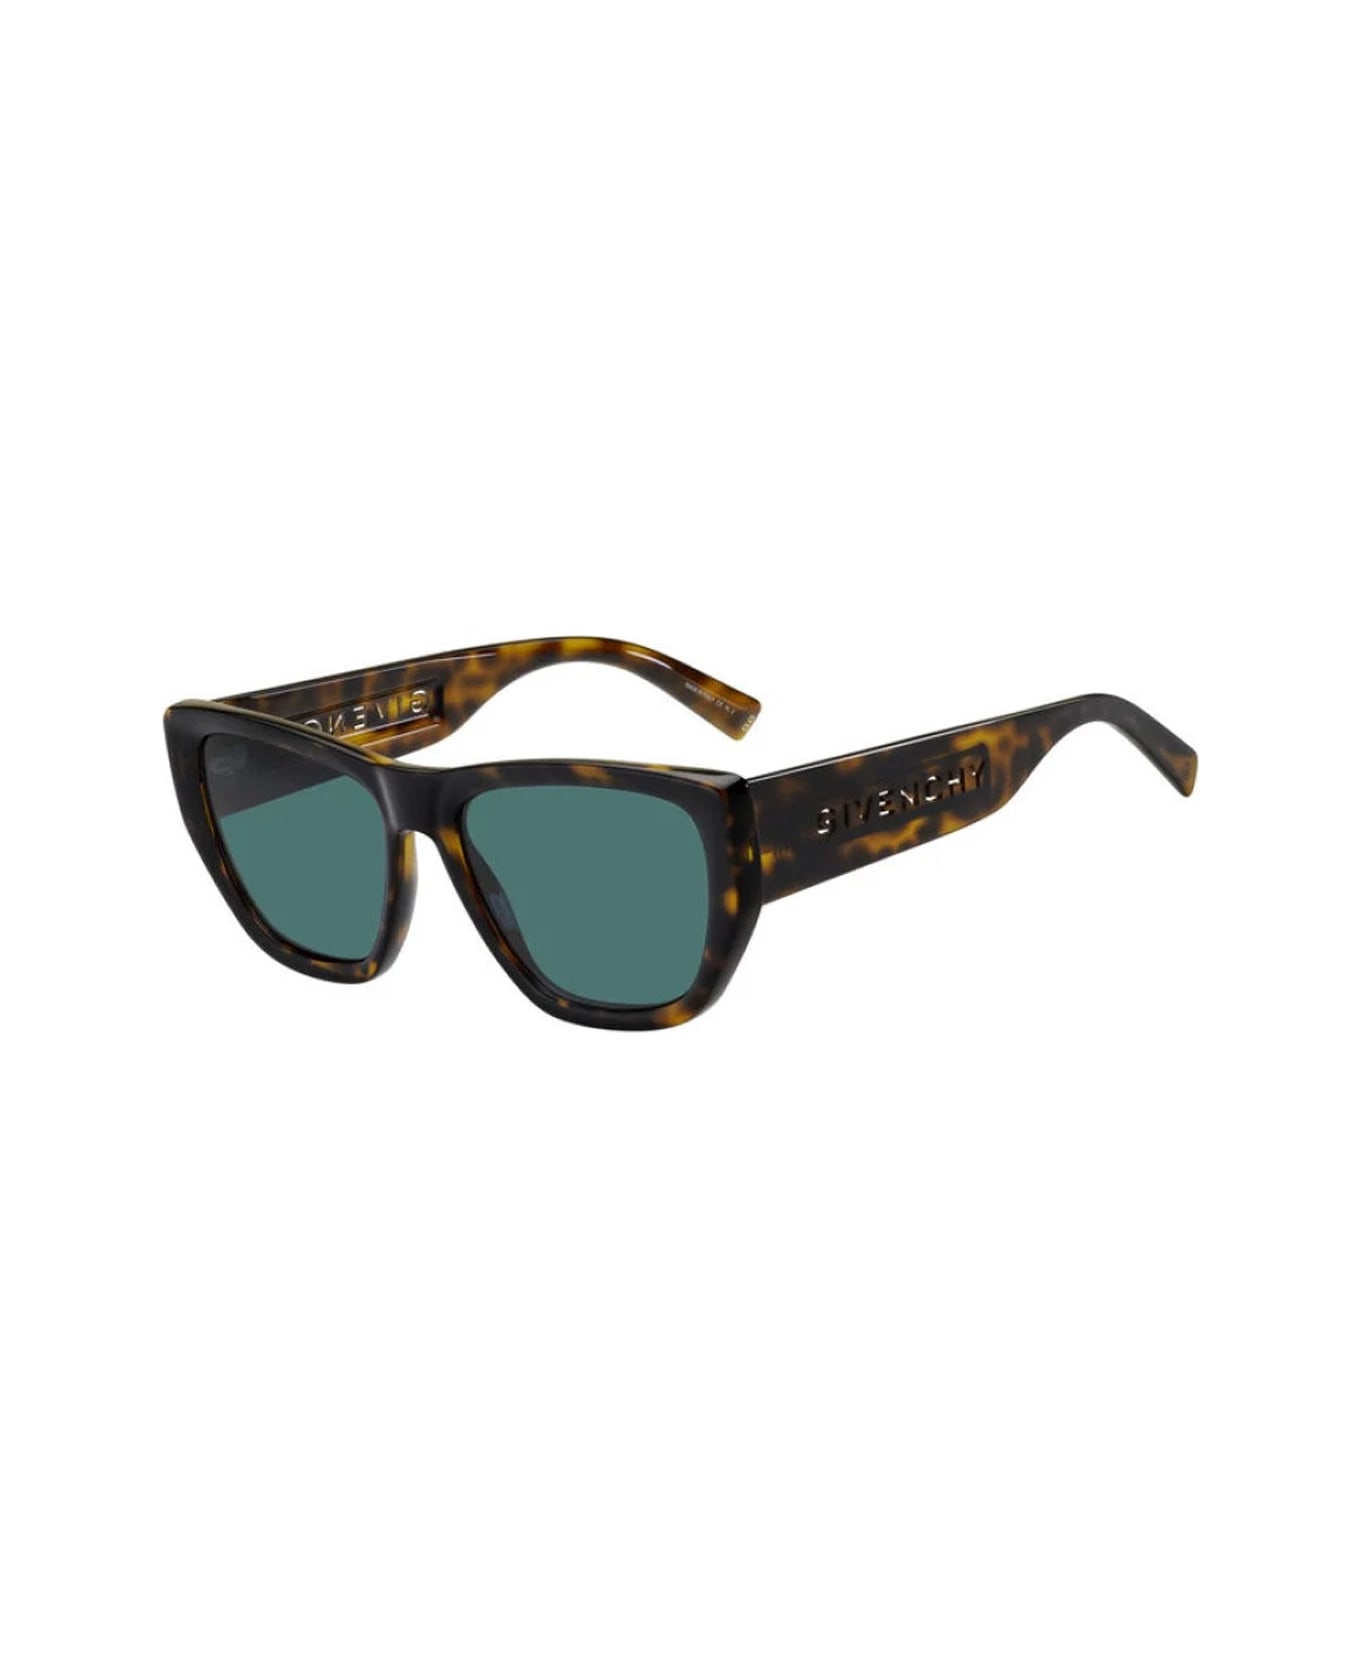 Givenchy Eyewear Gv 7202/s Sunglasses - Marrone